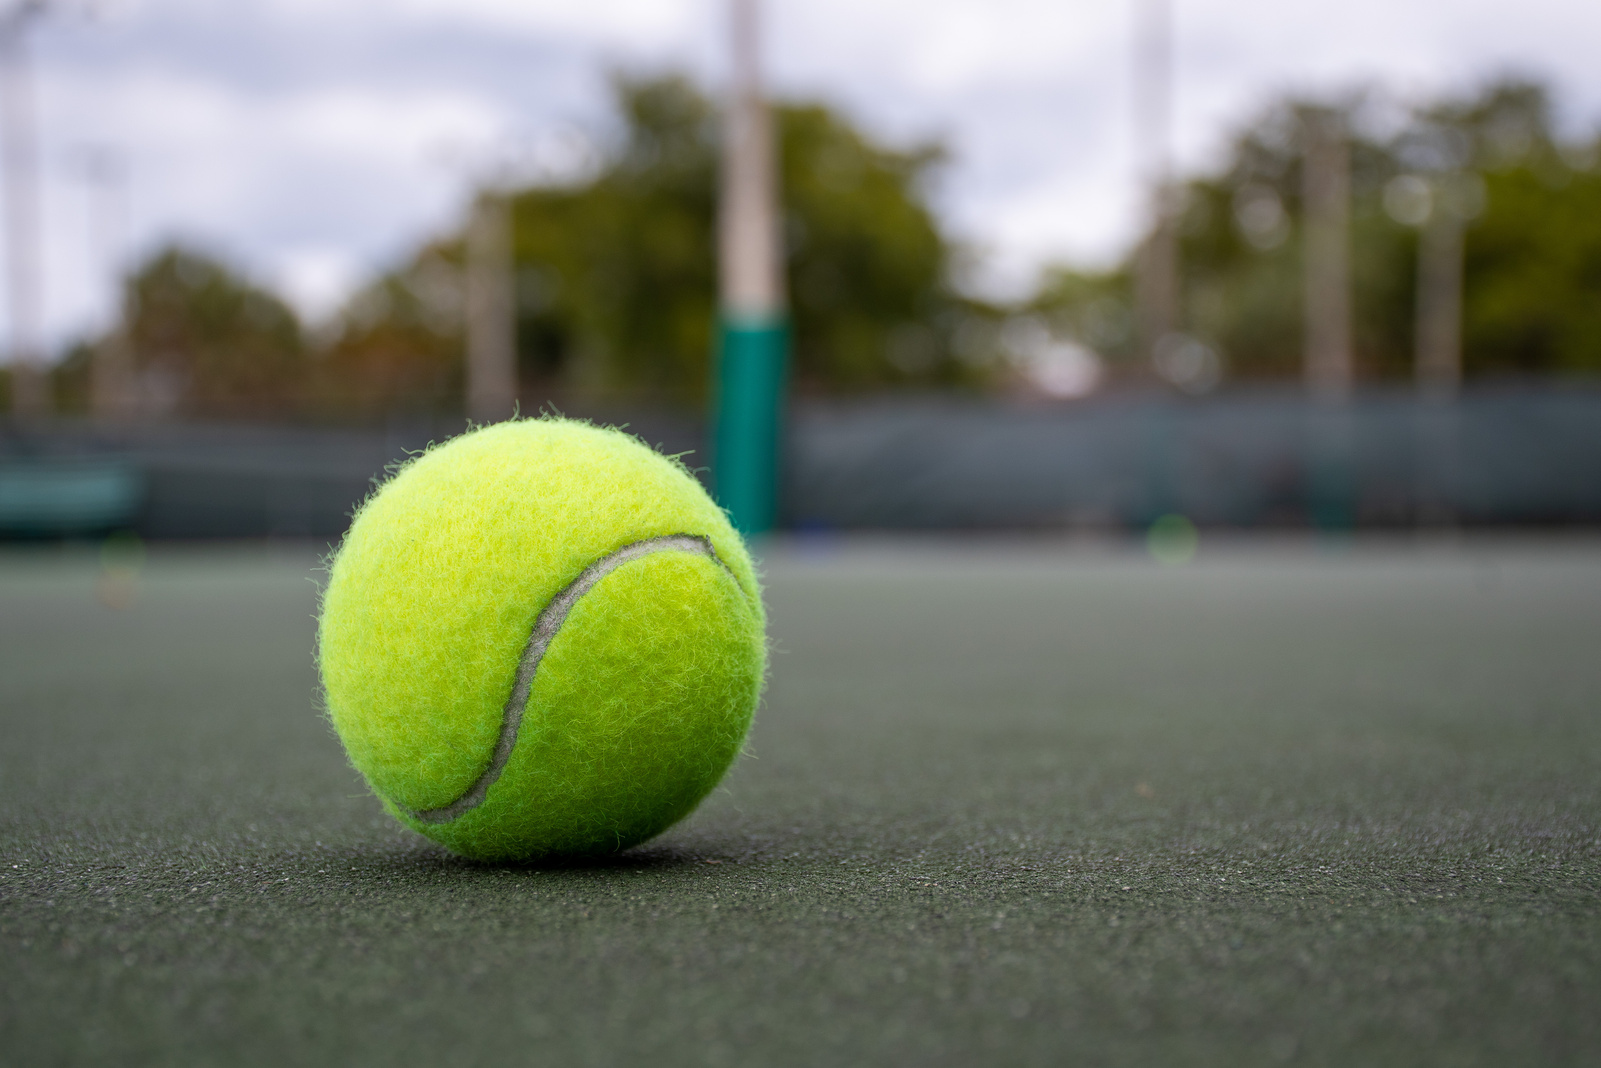 Green Tennis Ball on a Tennis Court